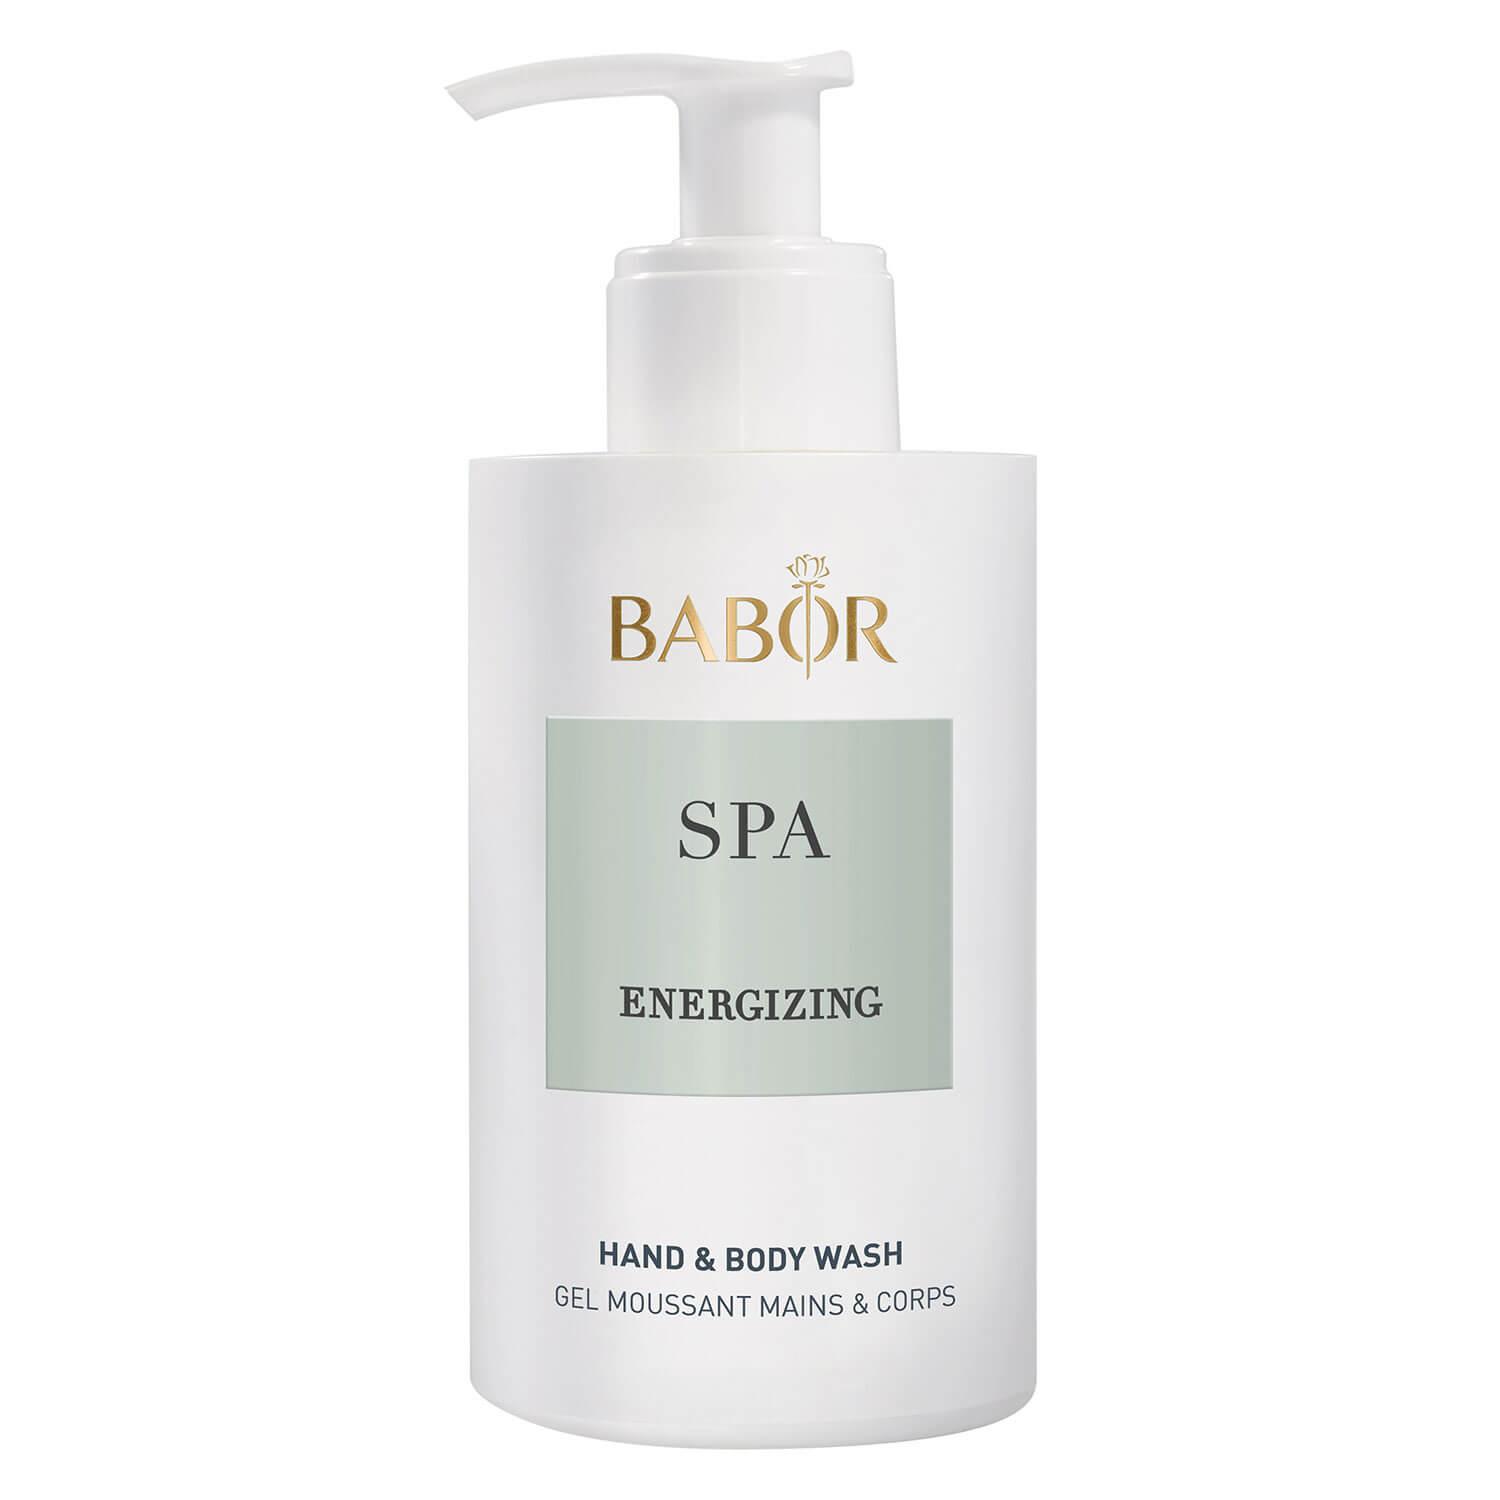 BABOR SPA - Energizing Hand & Body Wash